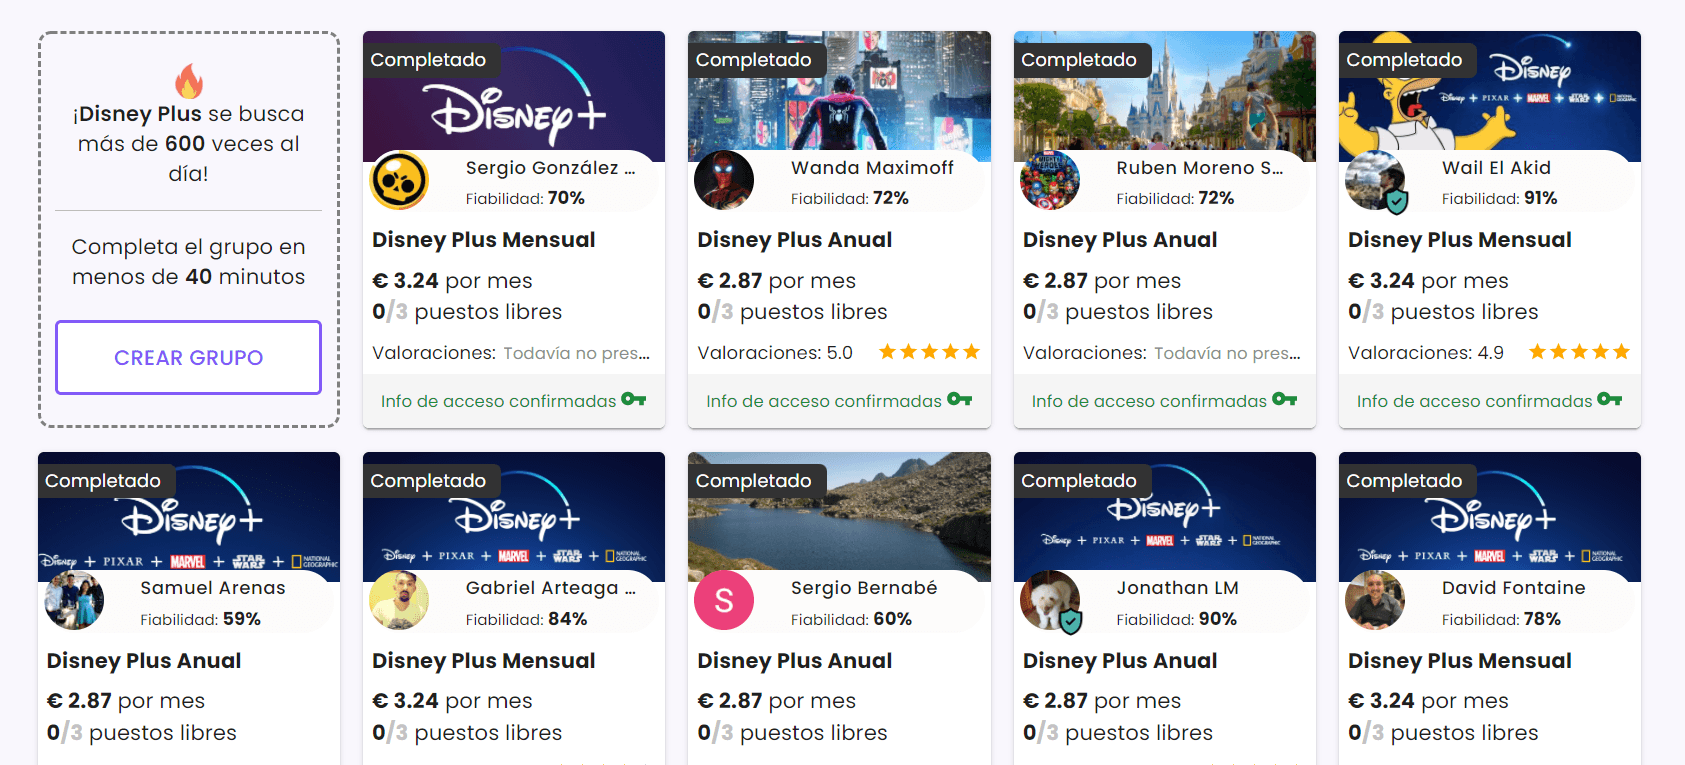 Grupos completos de Disney Plus.